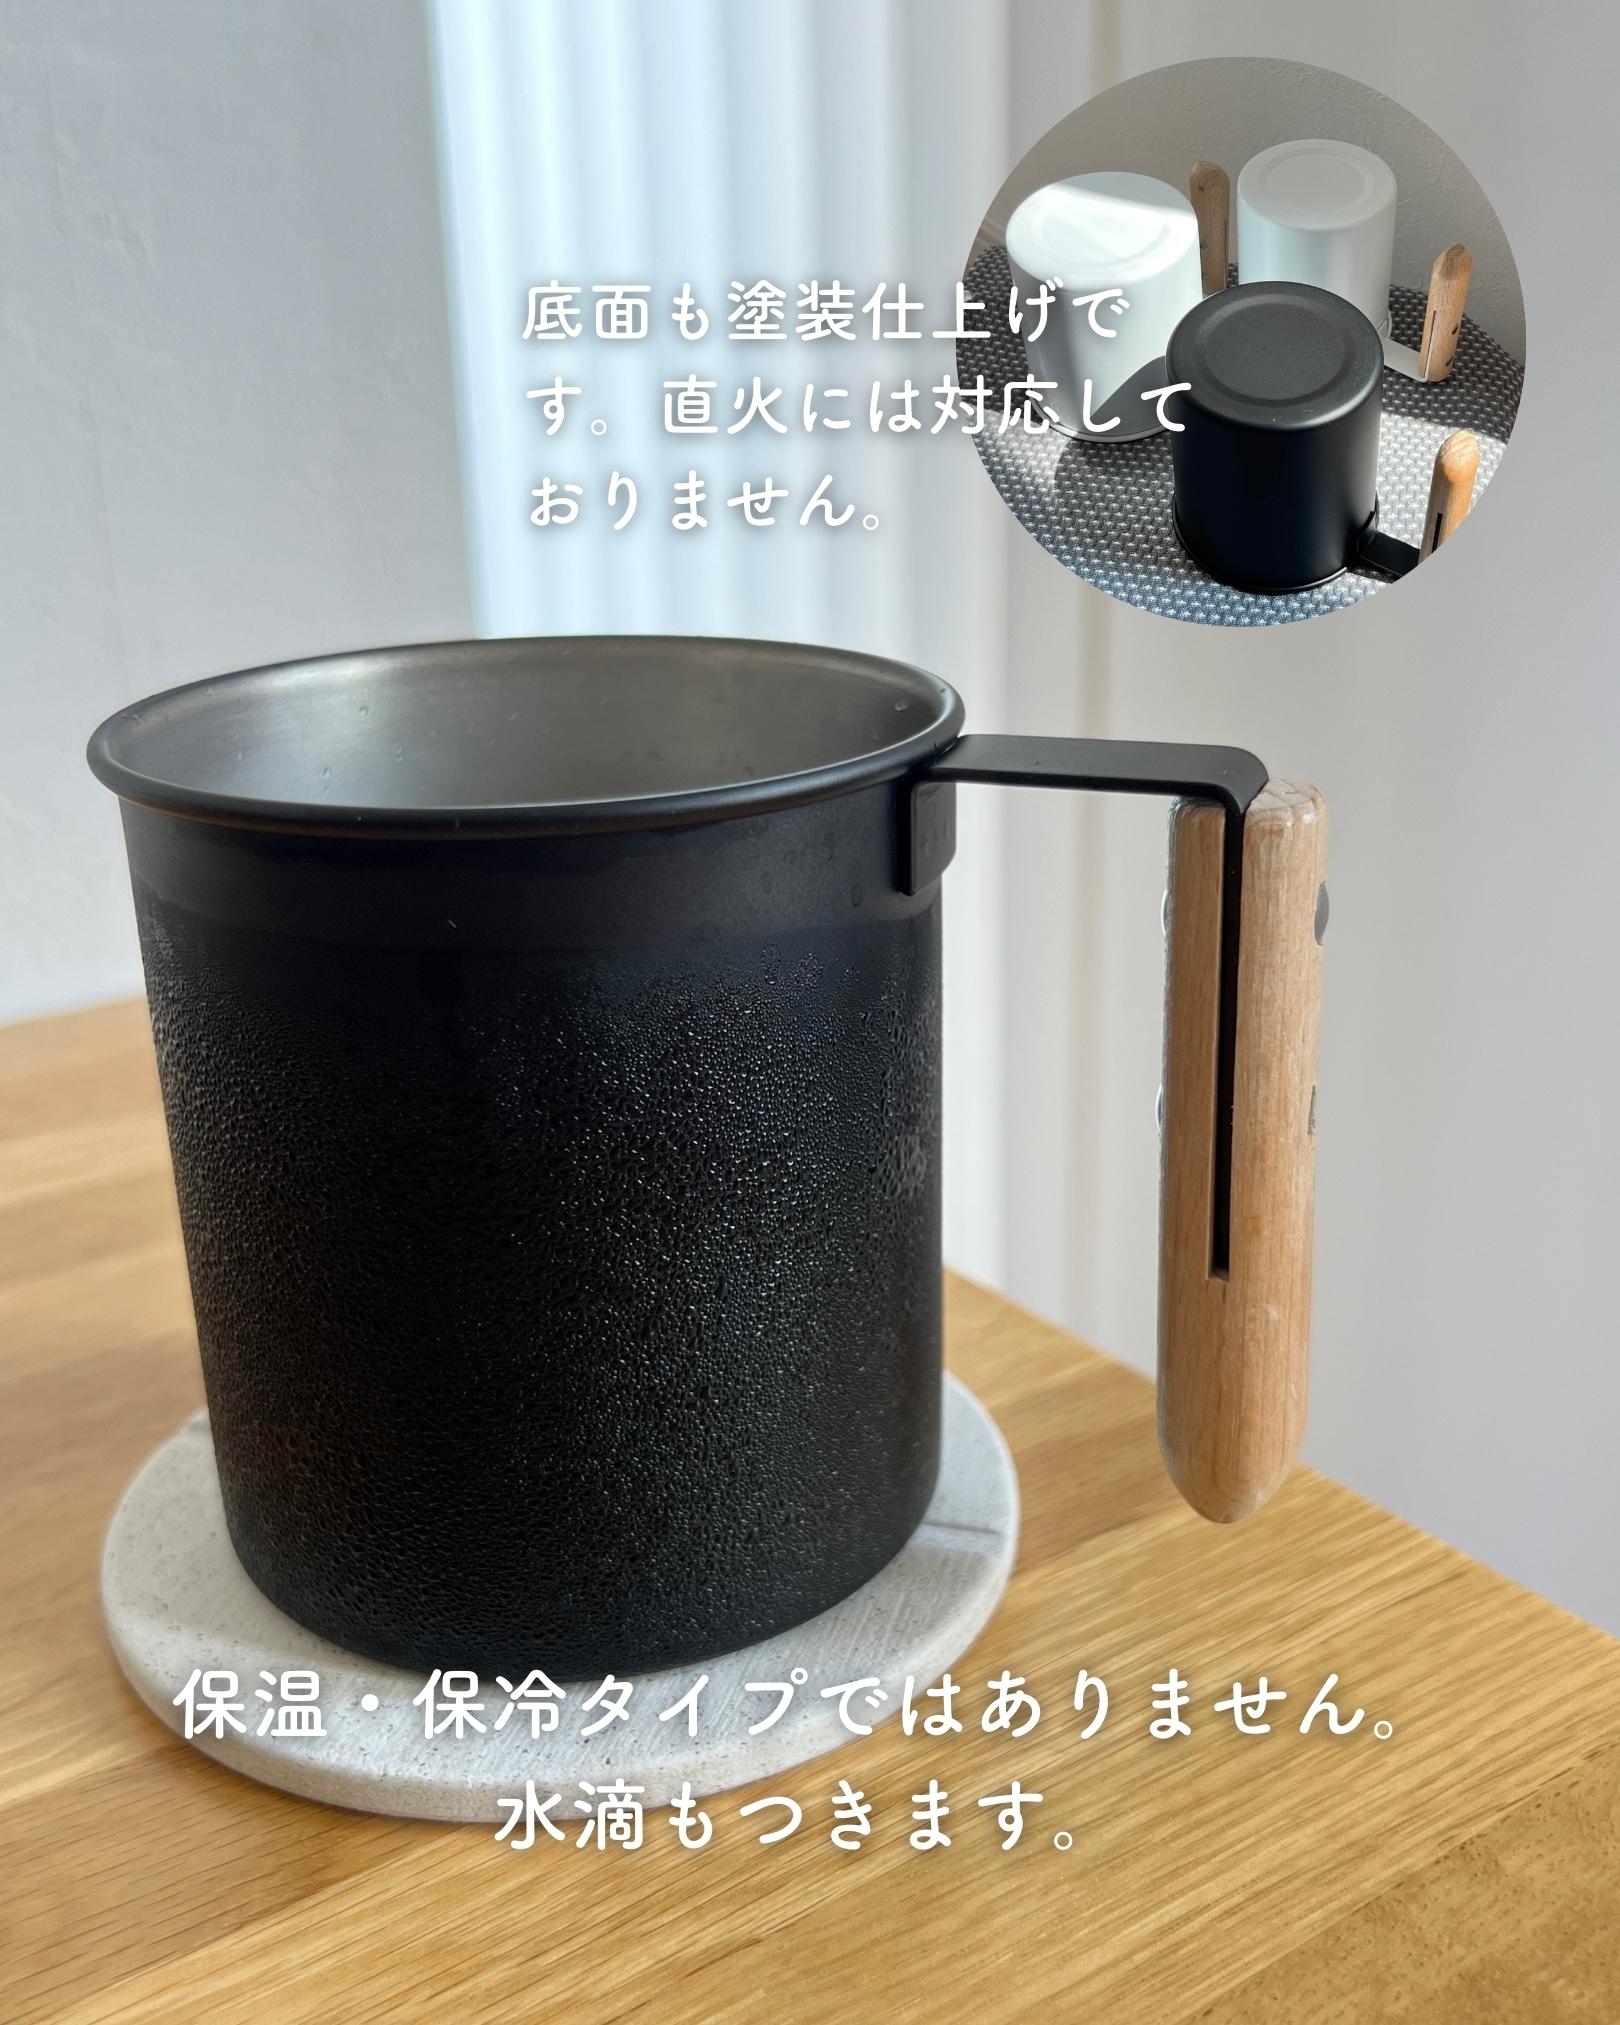 マグ マグカップ L 300ml ステンレス 日本製 ビーワーススタイル